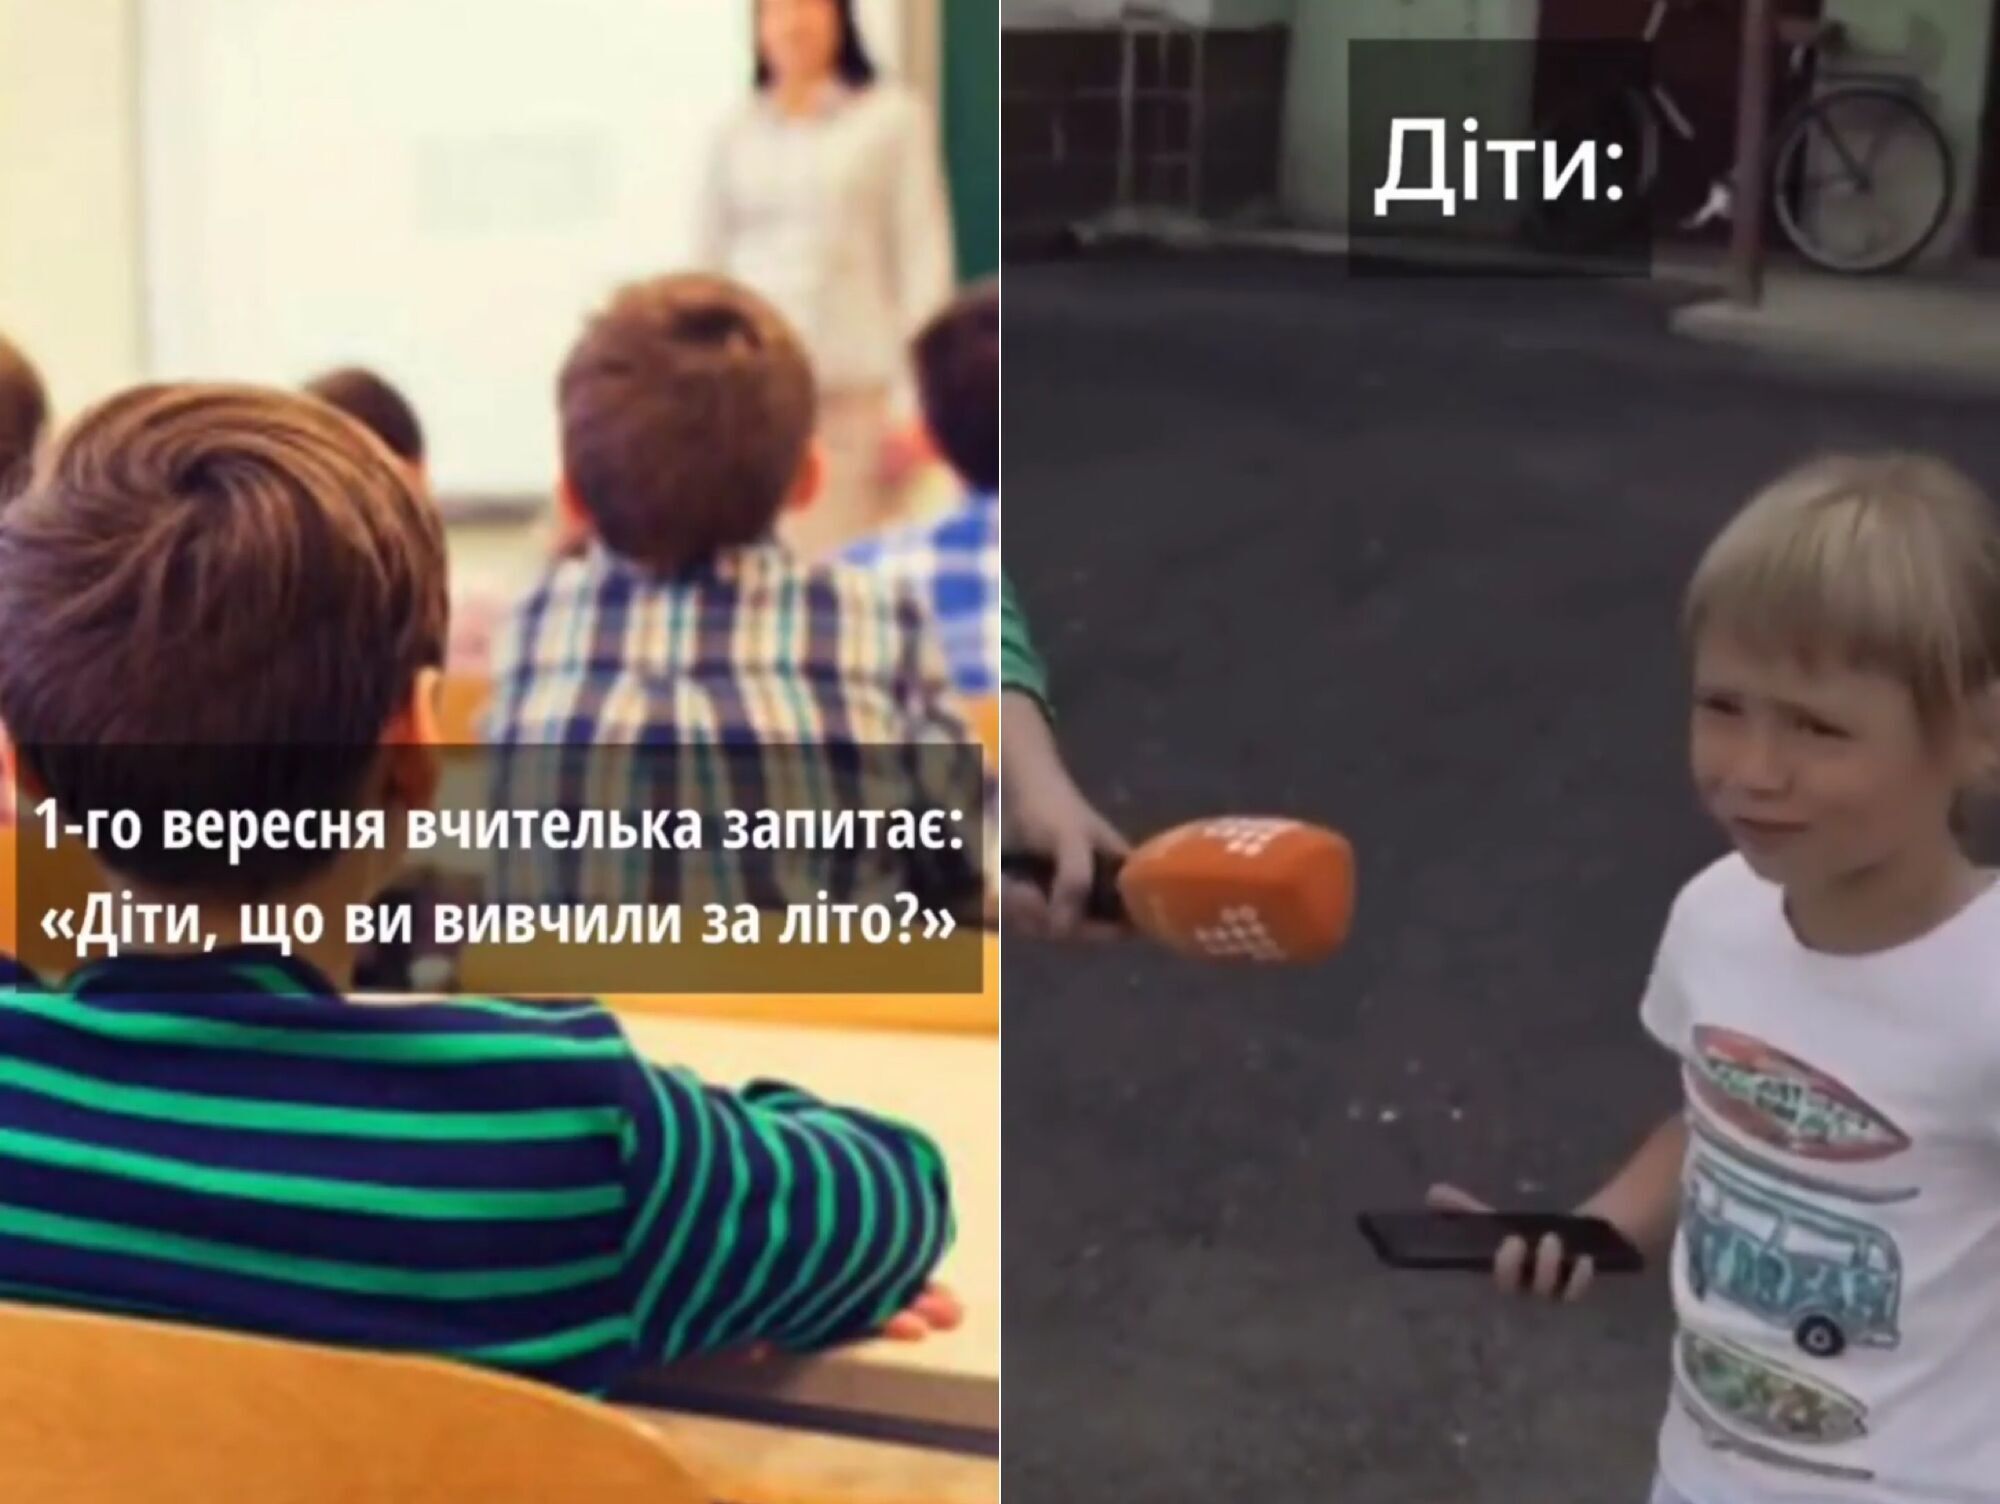 "Діти, що ви вивчили за літо?" Вірш маленької українки про Путіна розсмішив мережу